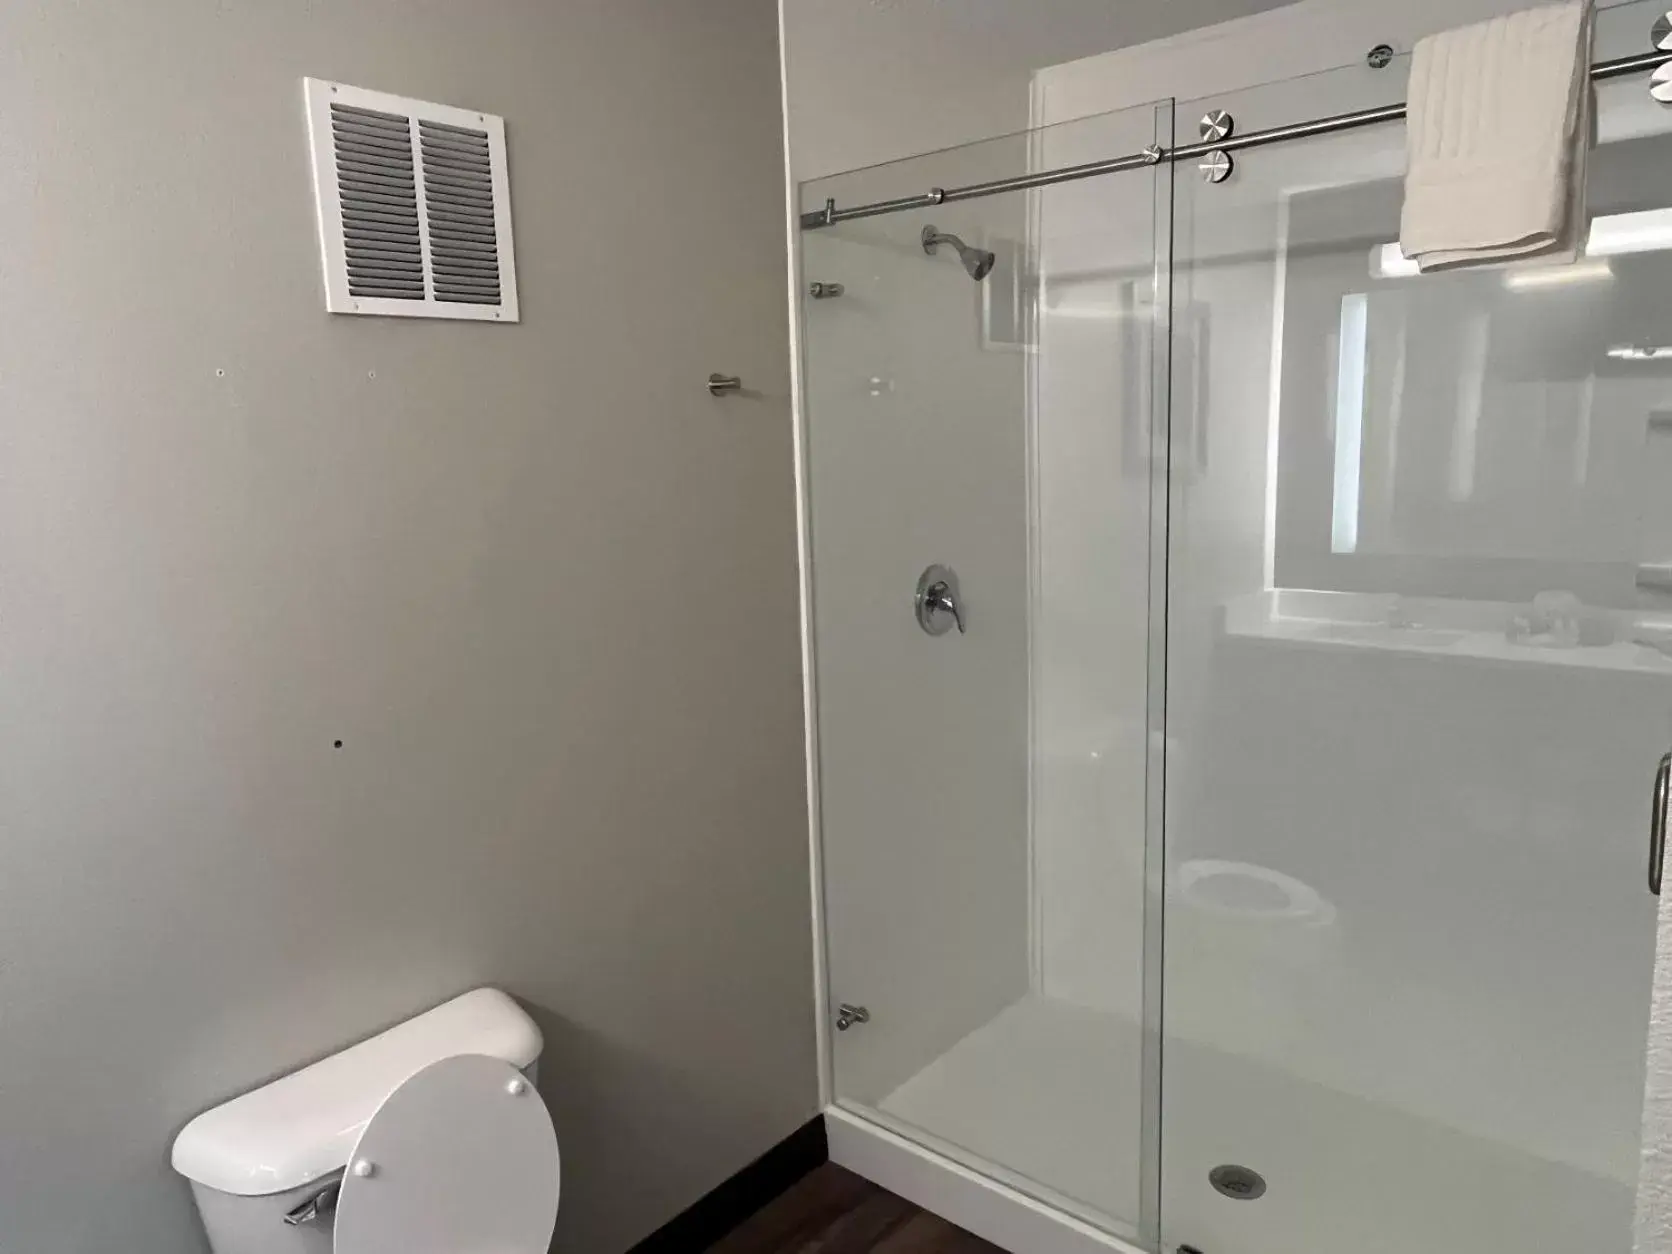 Bathroom in Comfort Inn & Suites Tipp City - I-75